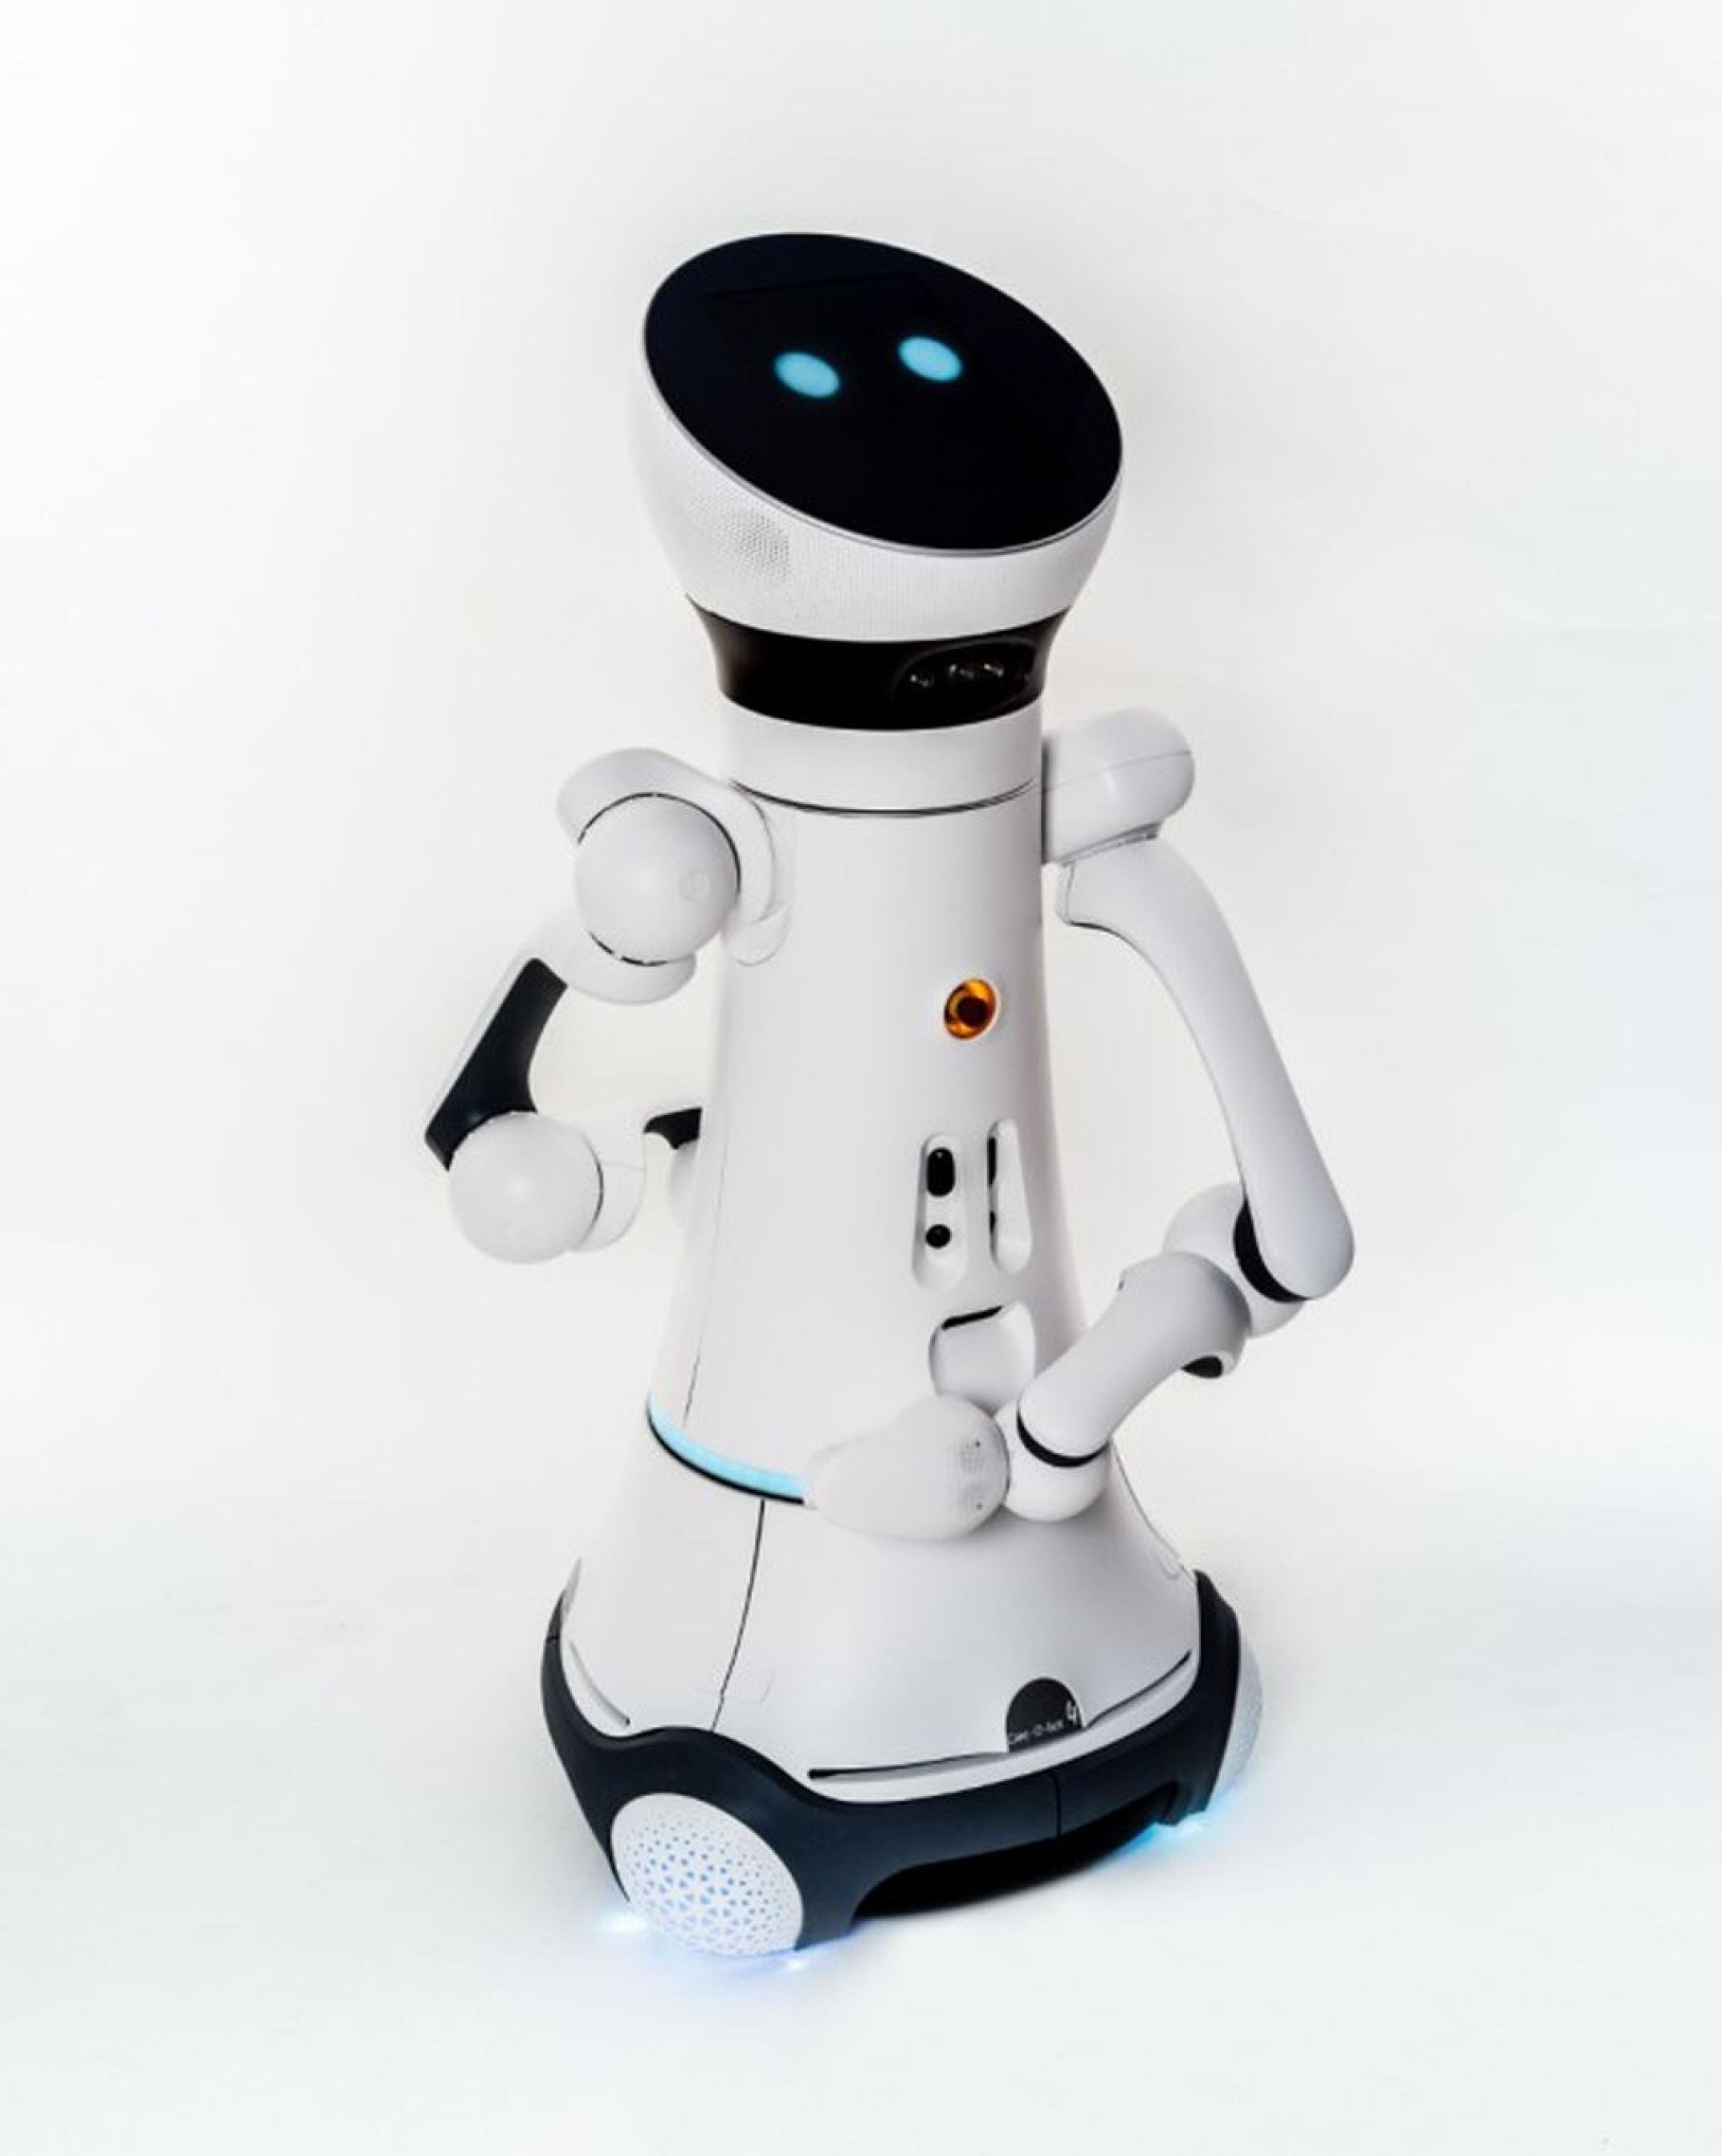 Der Care-O-bot ist ein Pflegeroboter auf Rollen mit angedeutetem Kopf und Armen.